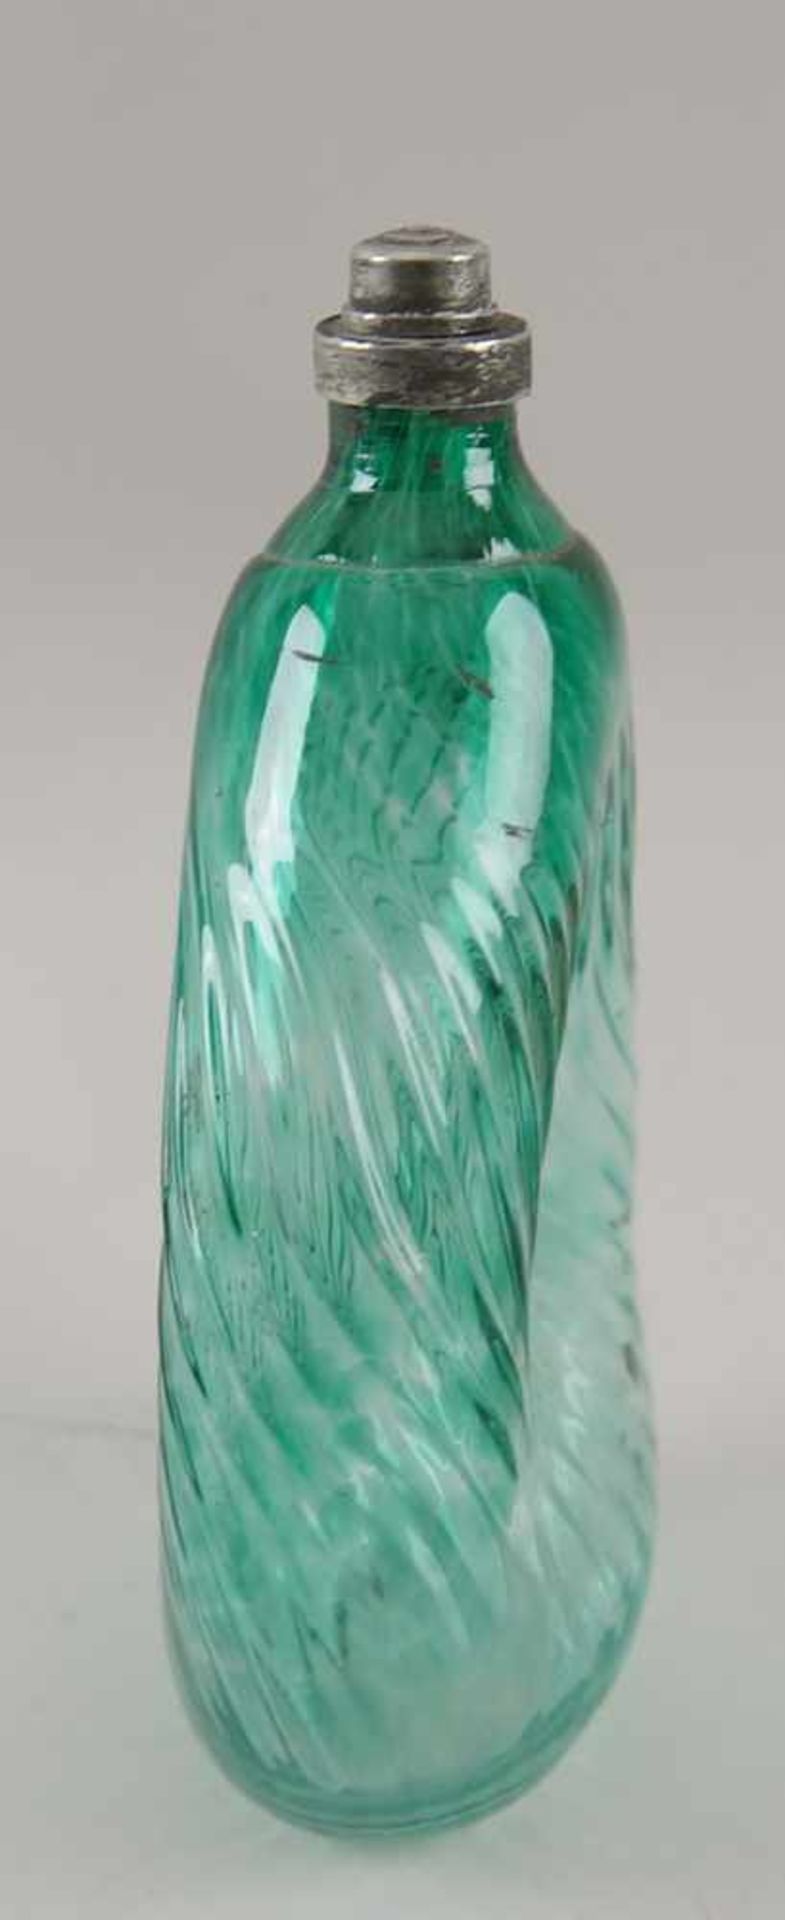 Gramsacher Nabelflasche, Tirol, ~ 1900, hellgrünes Glas, H 23,5cm - Bild 4 aus 6